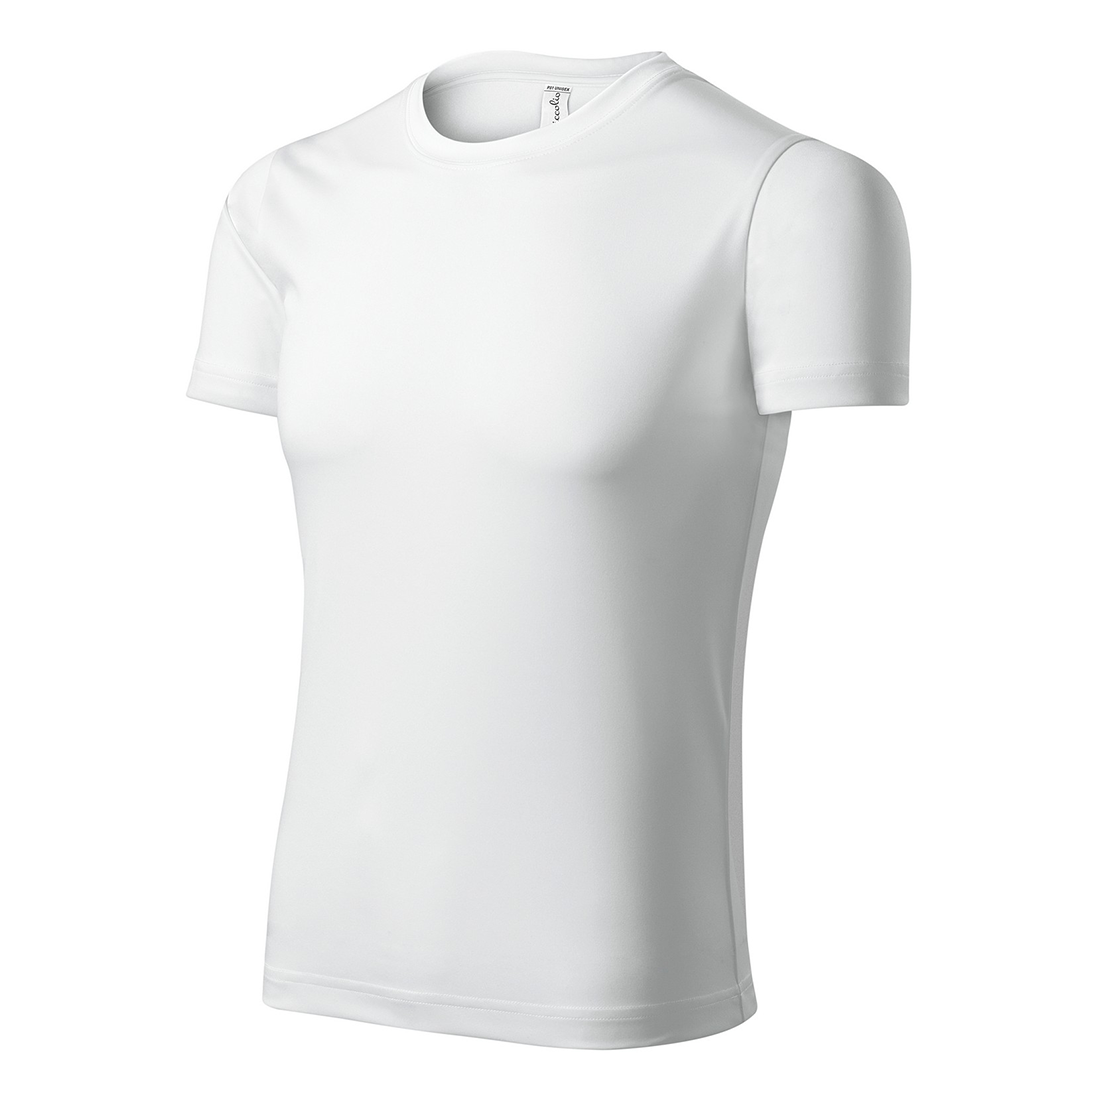 Camiseta unisex PIXEL - Ropa de protección